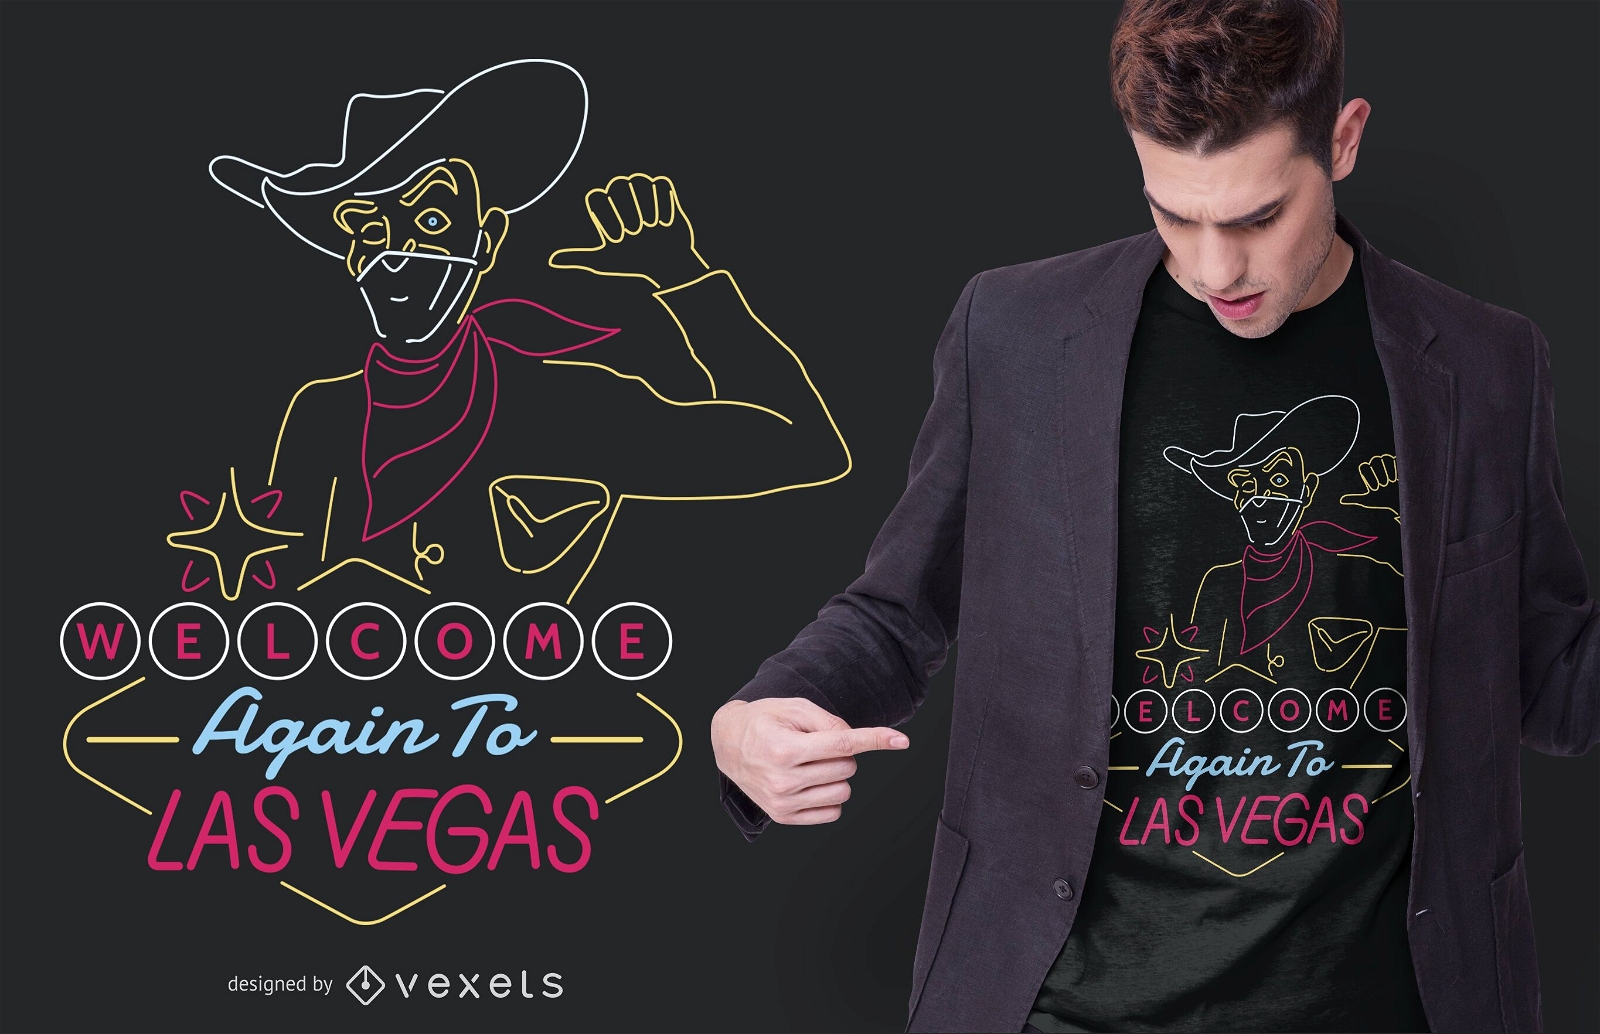 Welcome again vegas t-shirt design